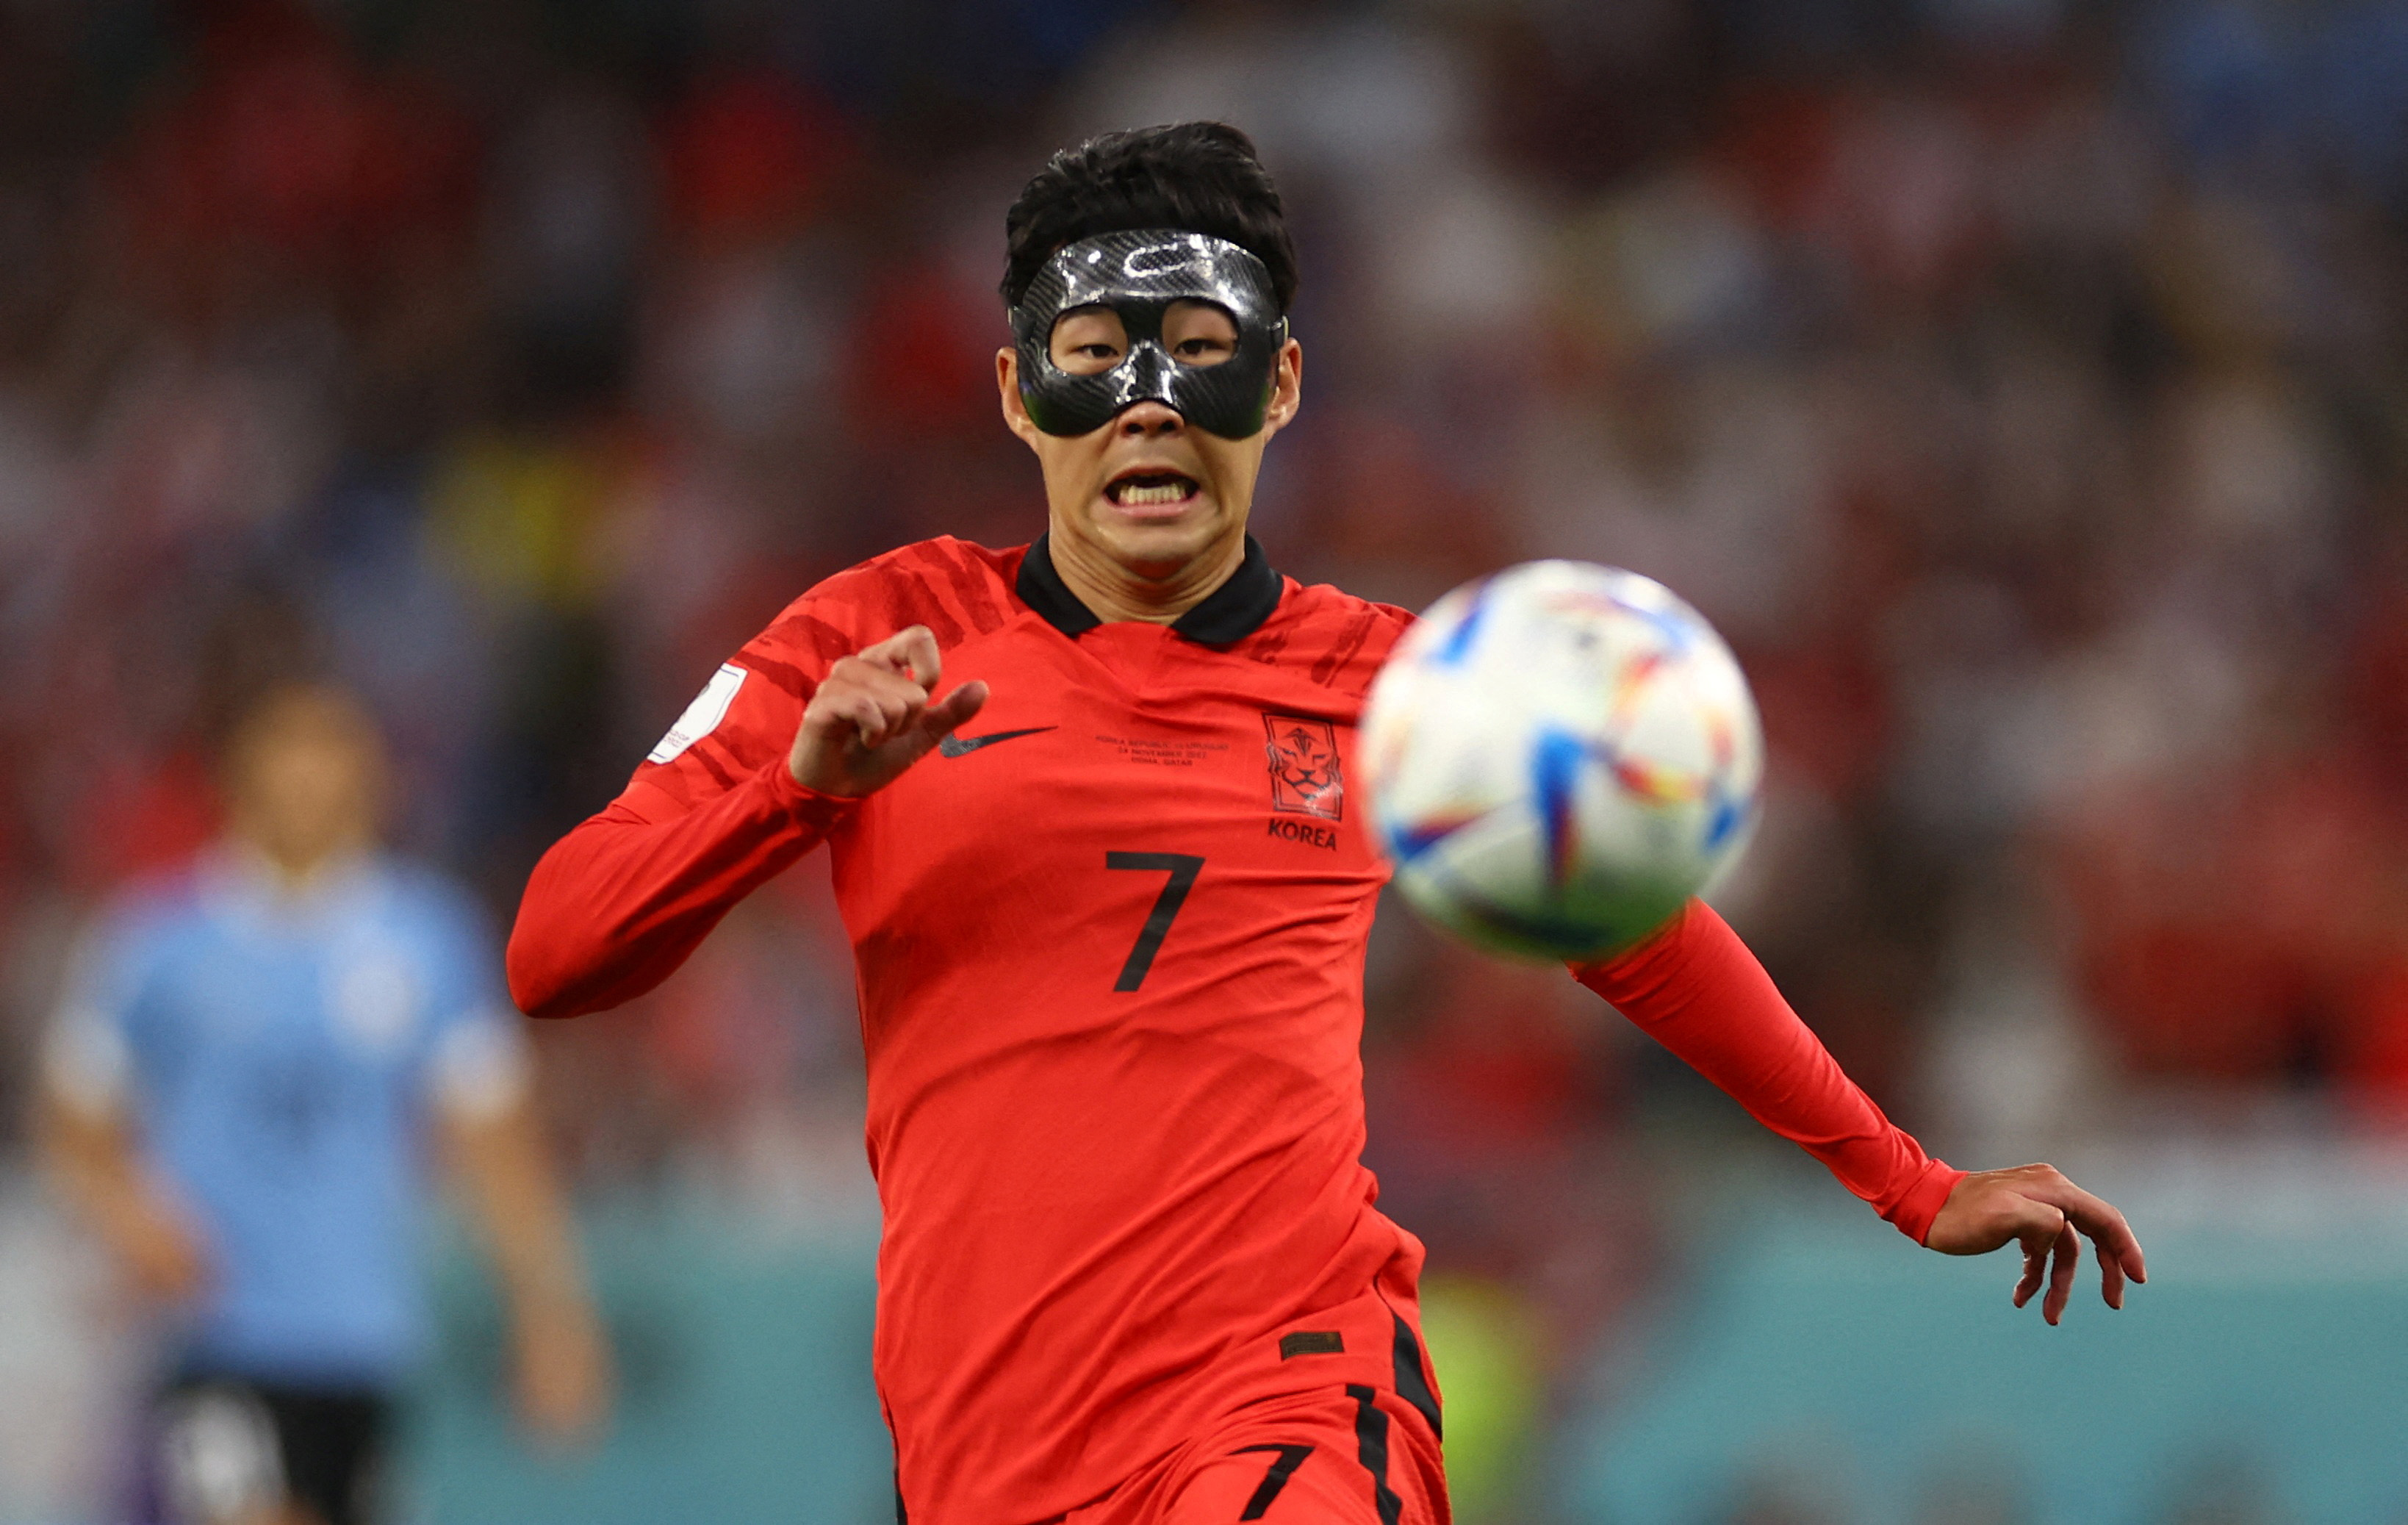           Kết quả tuyển Hàn Quốc 2-3 Ghana, World Cup 2022: Rượt đuổi tỷ số nghẹt thở         